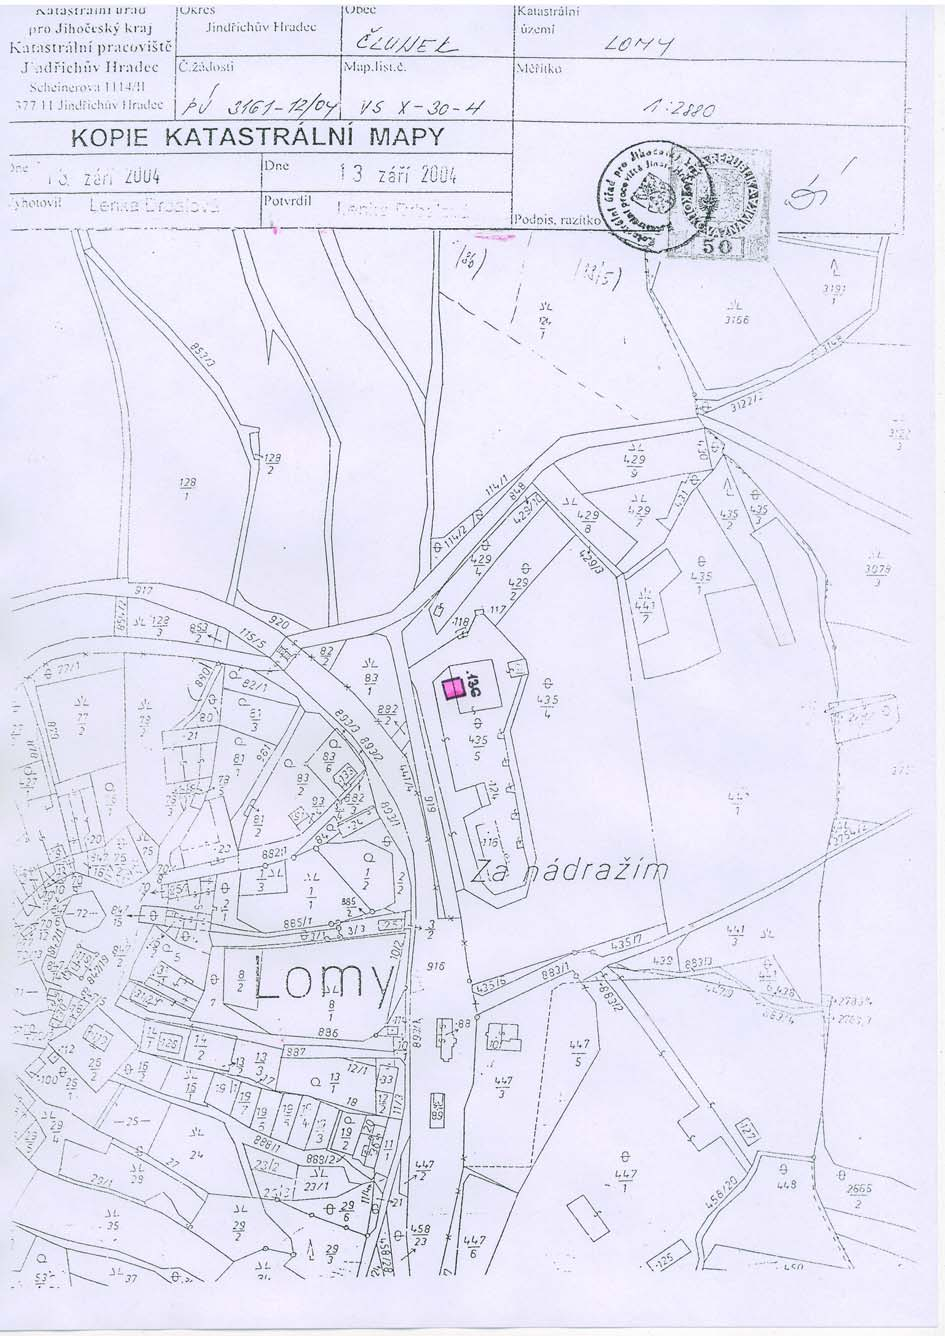 Snímek pozemkové mapy dokumentace pro zjišťovací